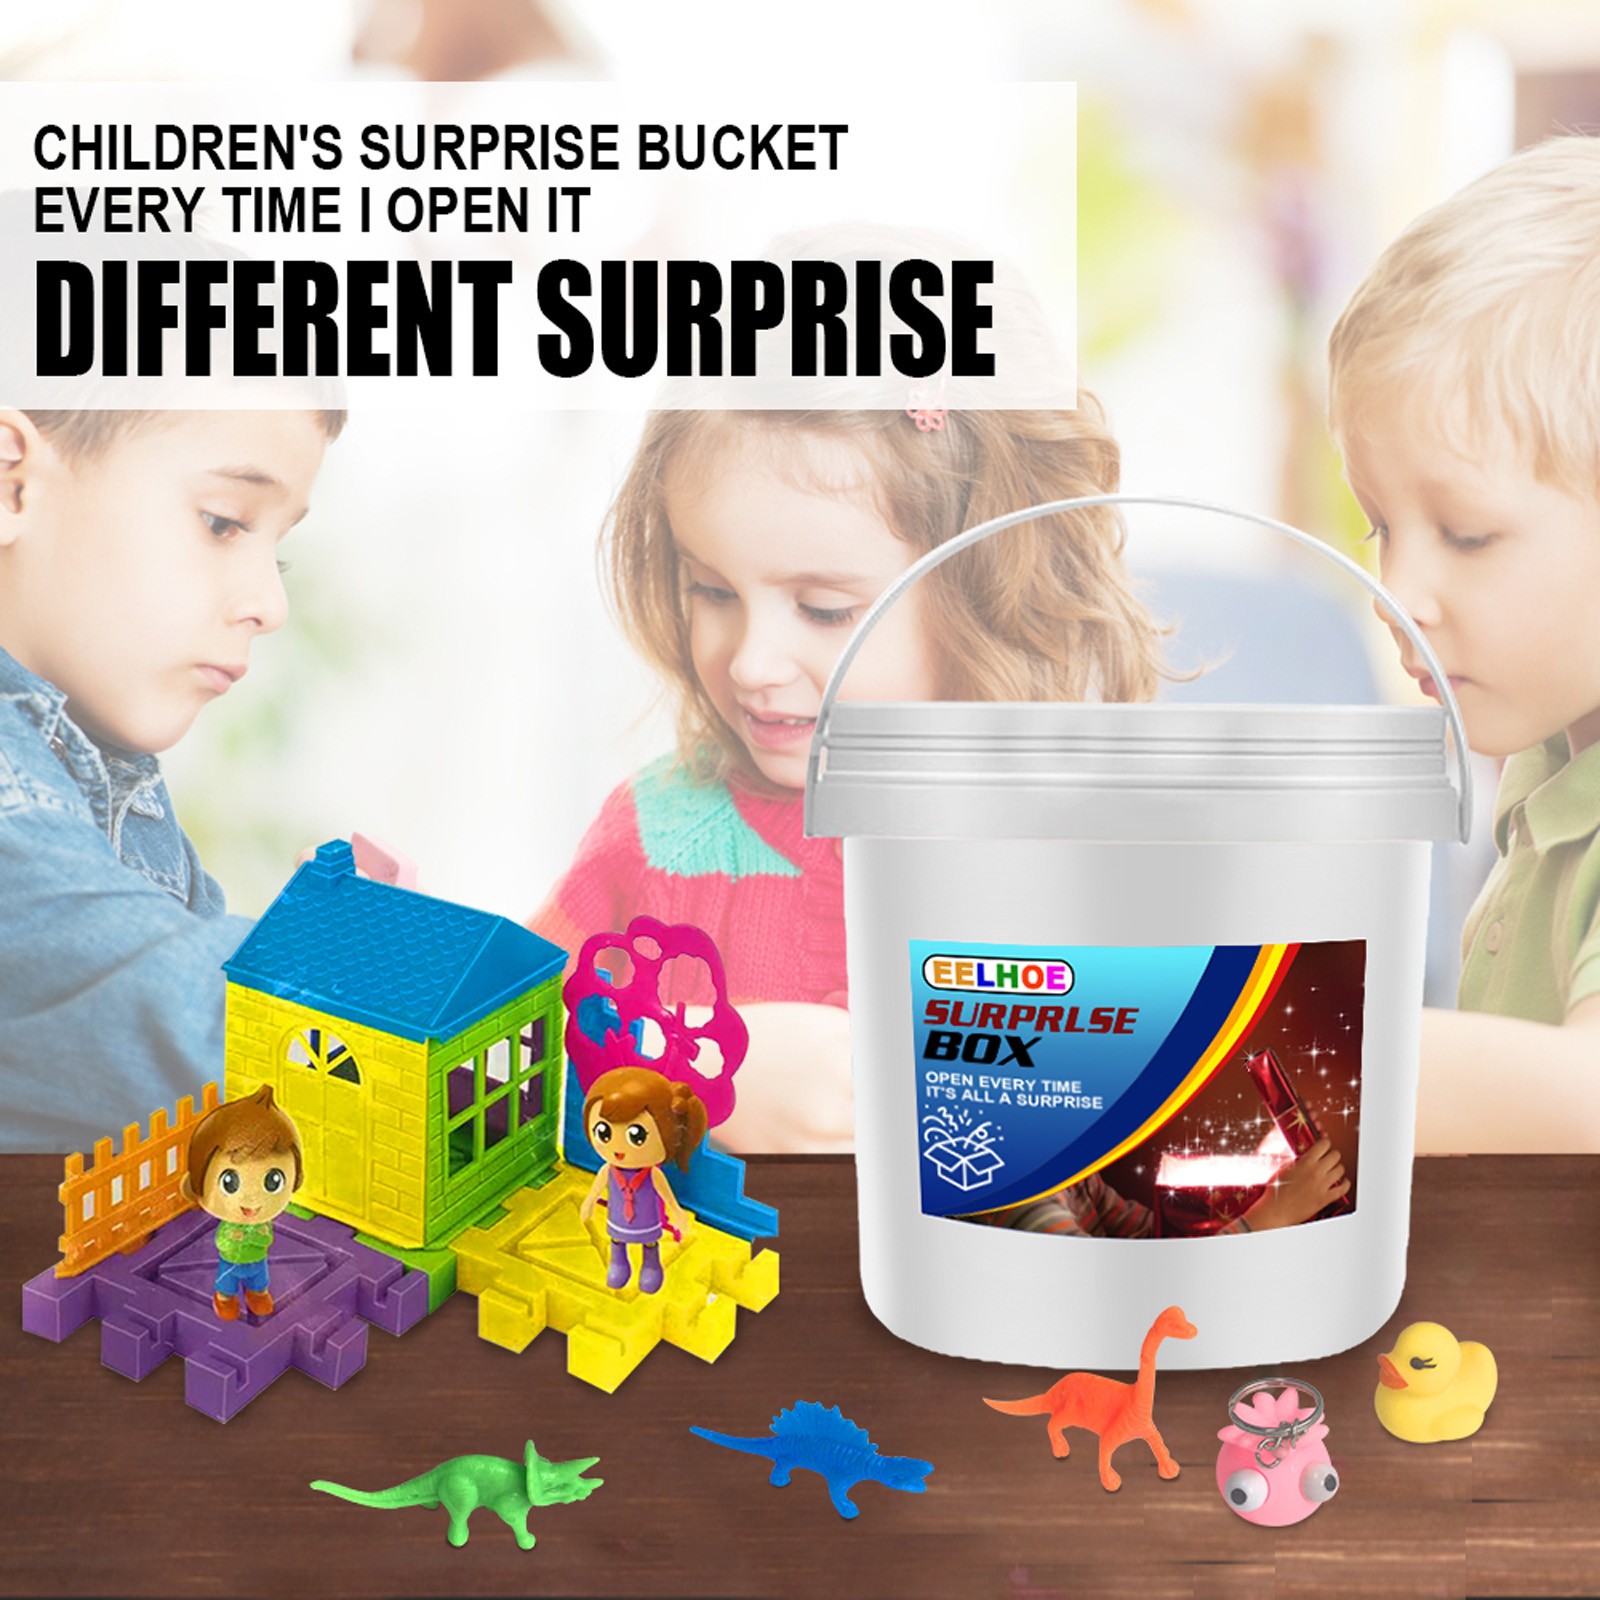 เด็กผู้ใหญ่ของเล่นเซอร์ไพรส์ Eelhoe Surprise Bucket เป็นของขวัญวันเกิดที่สมบูรณ์แบบ